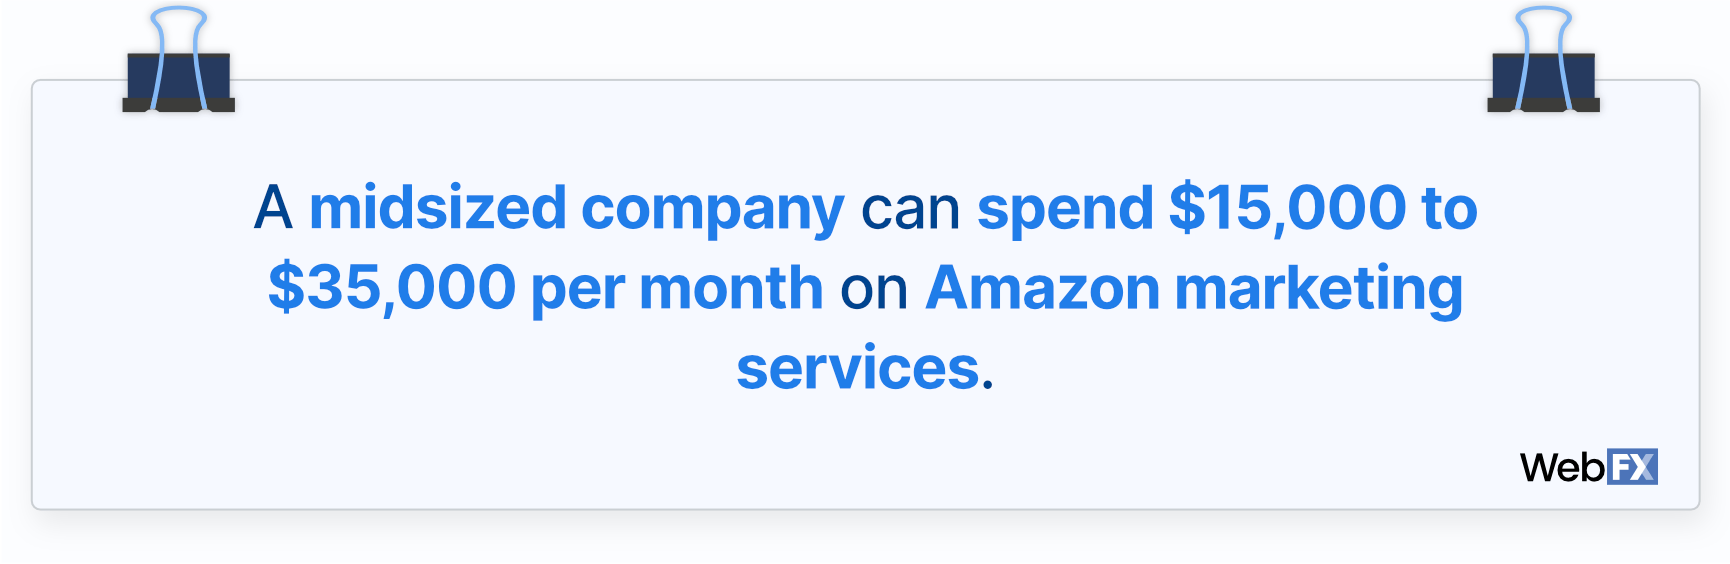 亚马逊针对中型企业的营销成本